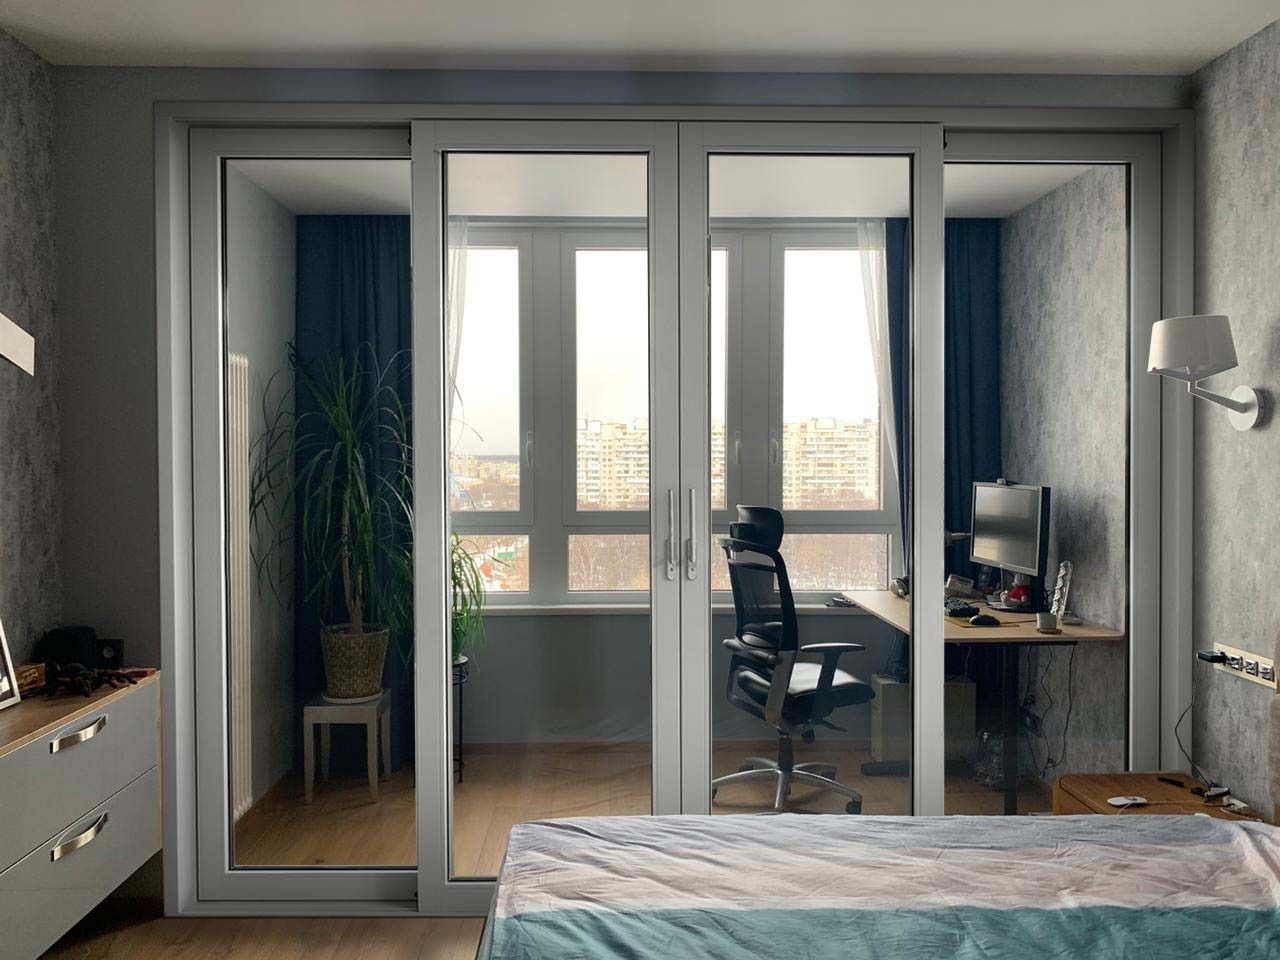 Балконная дверь в квартире. Французские окна в квартире. Французские окната квартире.